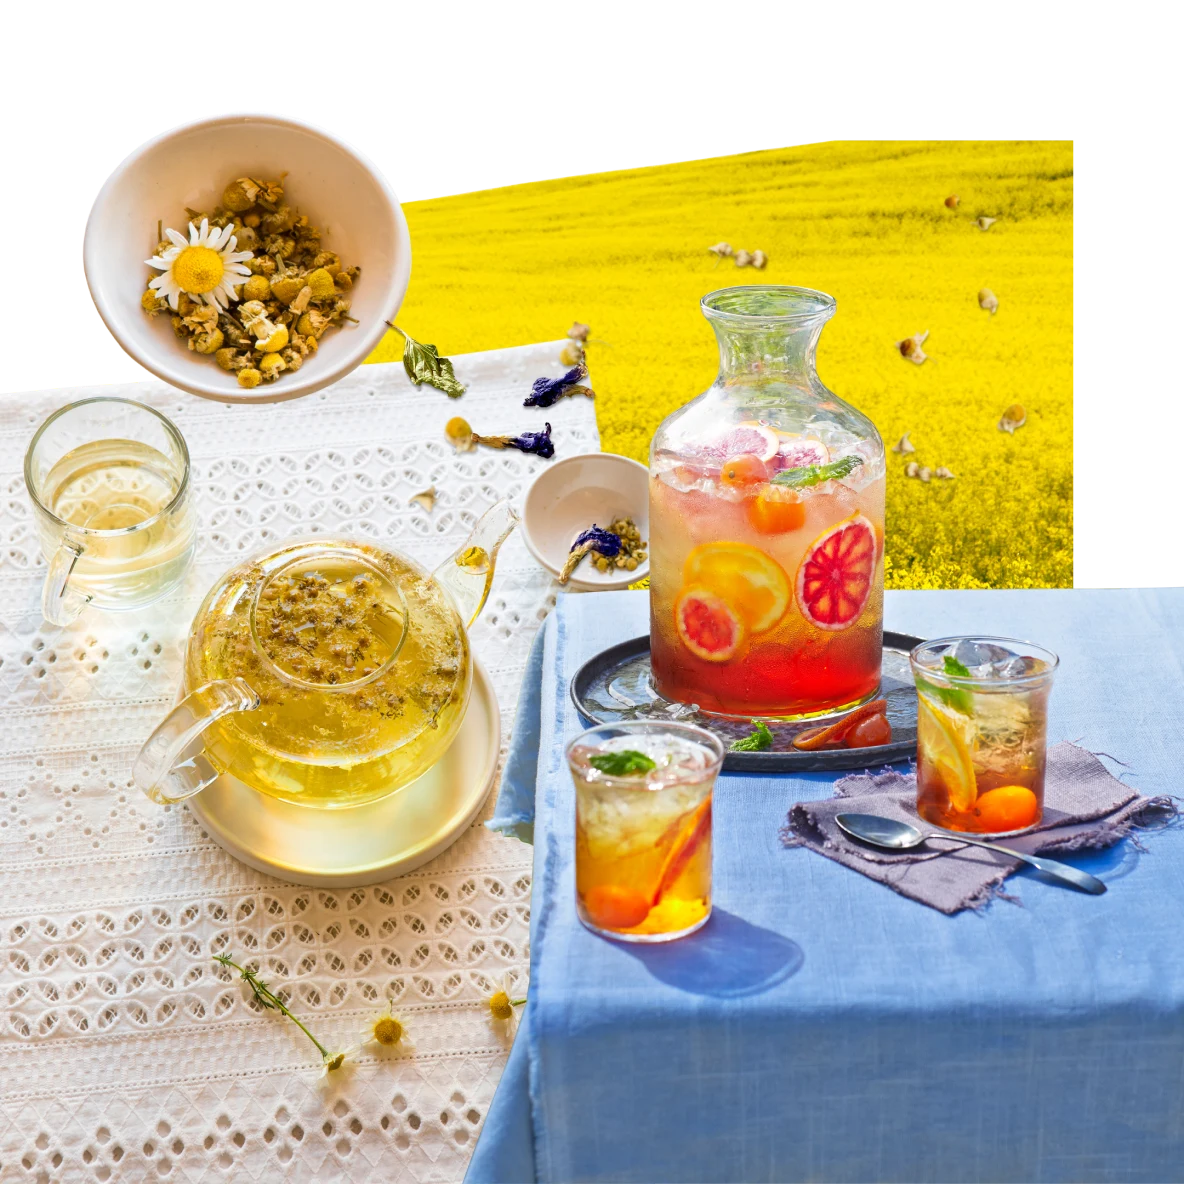 Eine Collage mit Gegenständen zum Thema Tee. Eine Karaffe mit Eistee mit Zitronengeschmack auf einem Tisch mit einer weißen Tischdecke und zwei Gläsern, die mit Eistee gefüllt sind. Eine Teekanne aus Glas mit Kräutertee neben einer Teetasse und einer Schale mit Kräutern. Im Hintergrund ein Feld mit gelben Blumen.